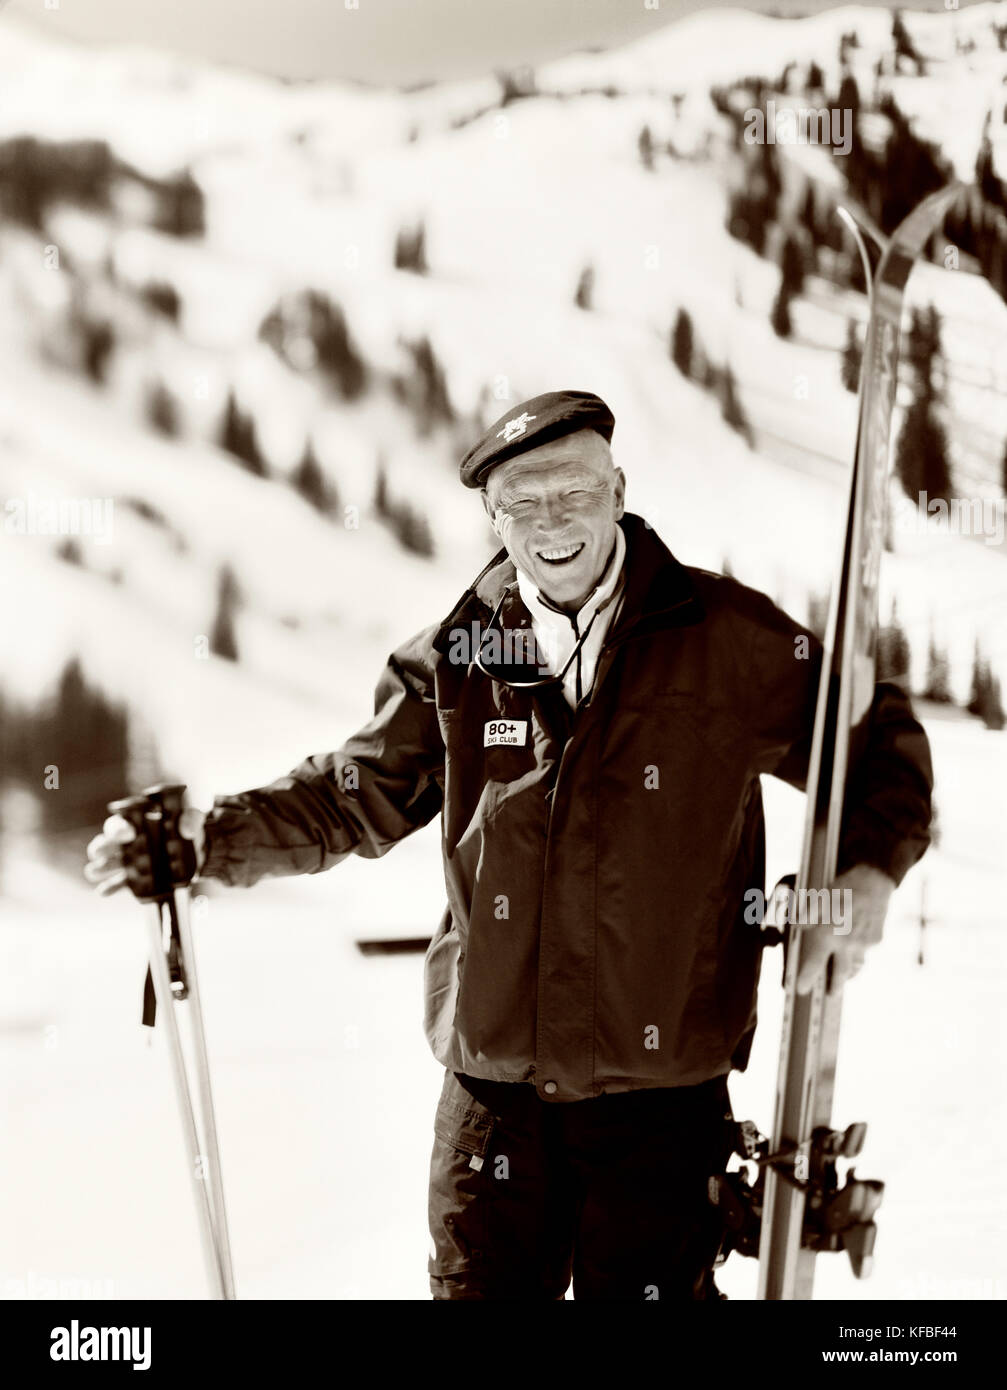 USA, Utah, Portrait eines älteren Mann, Skier und Stöcke, 80 + Ski Club, Alta Ski Resort (B&W) Stockfoto